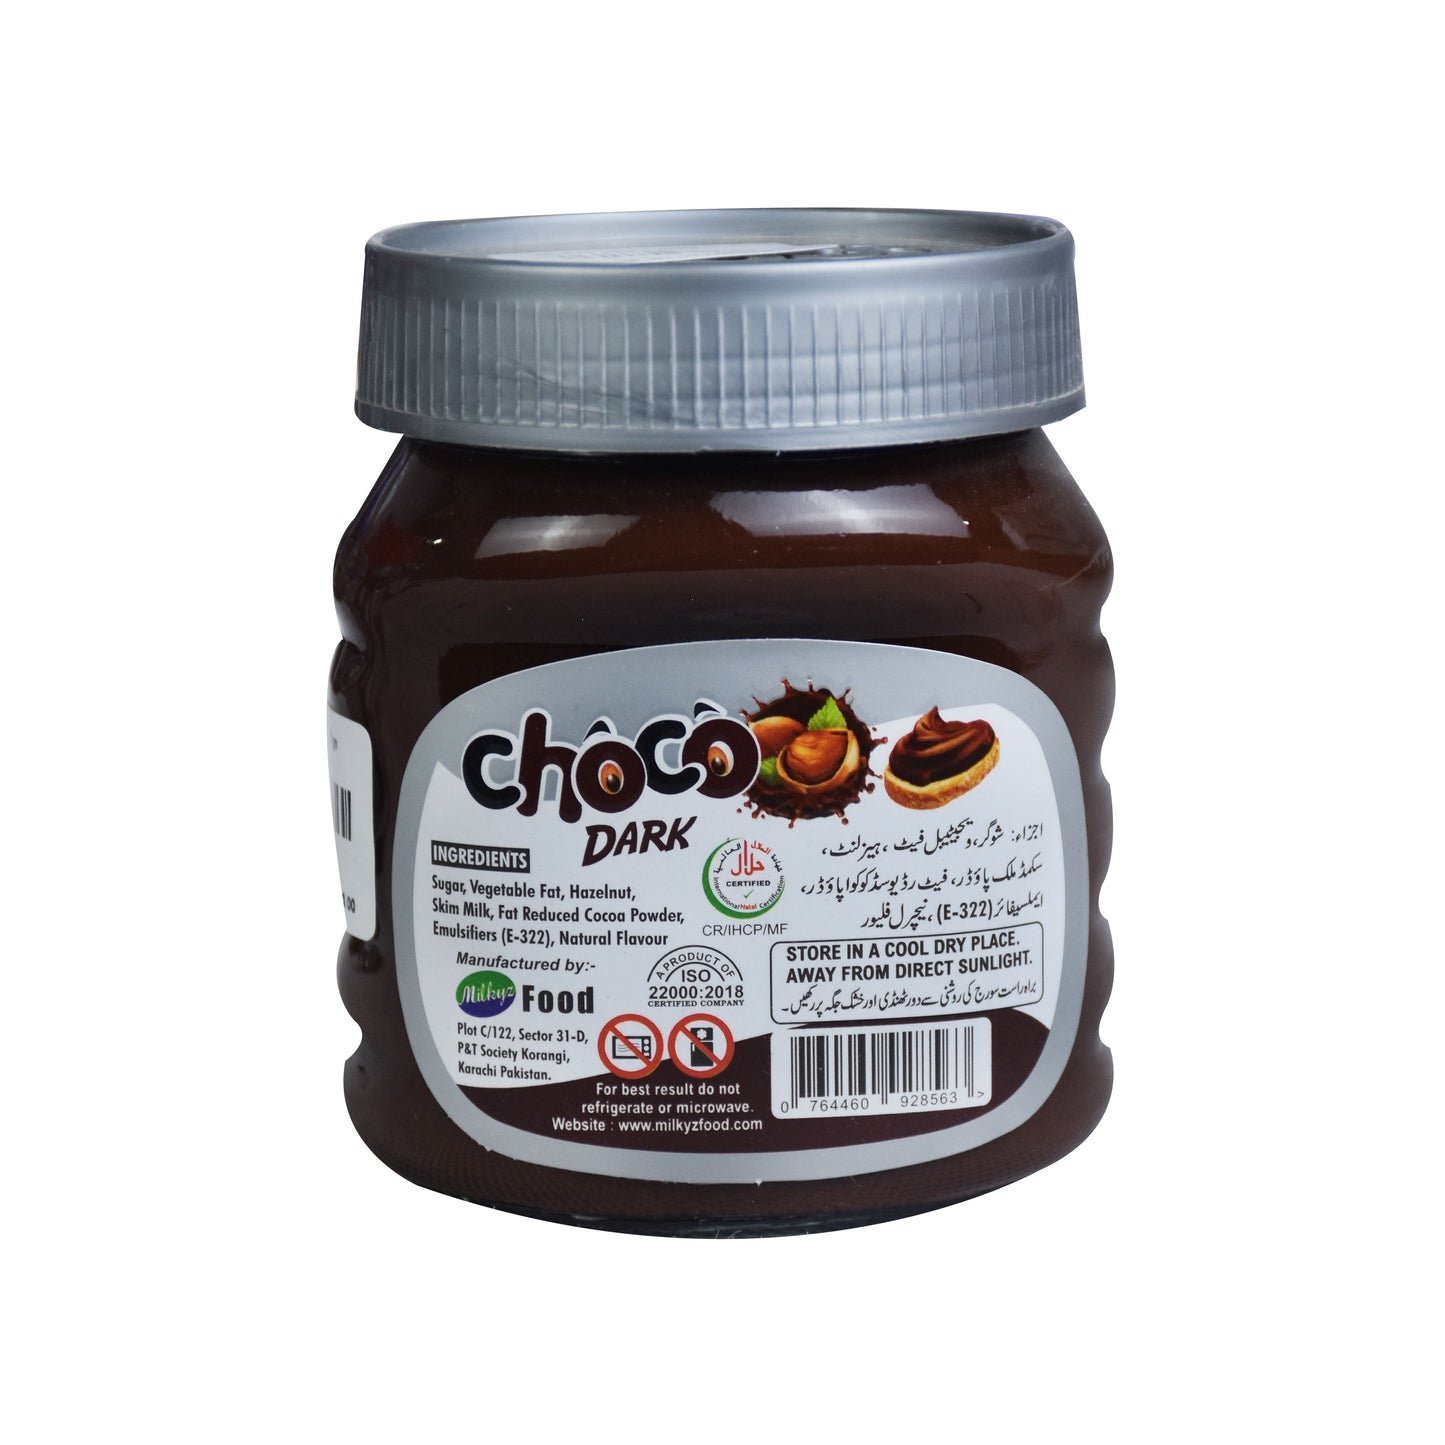 Milkyz Food Choco Dark Double Chocolate Spread With Hazelnut 350g Jar Bottle